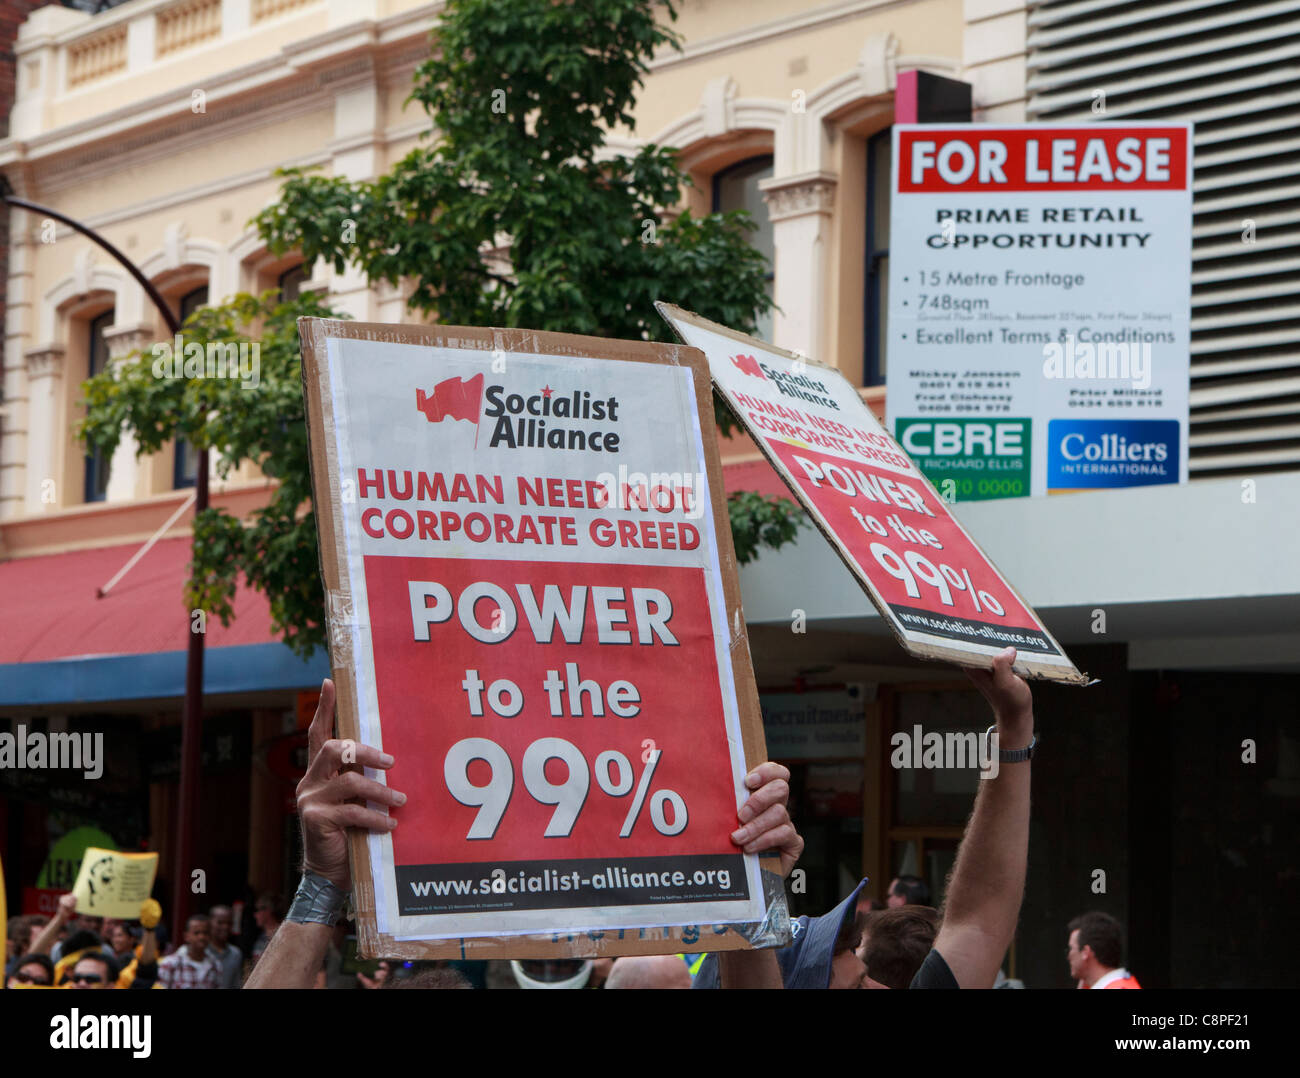 Socialist Alliance Demonstranten halten "Menschlichen Bedarf nicht Corporate Gier" & "Macht zu 99 %" Plakate unten "Für Lease" Zeichen. Stockfoto